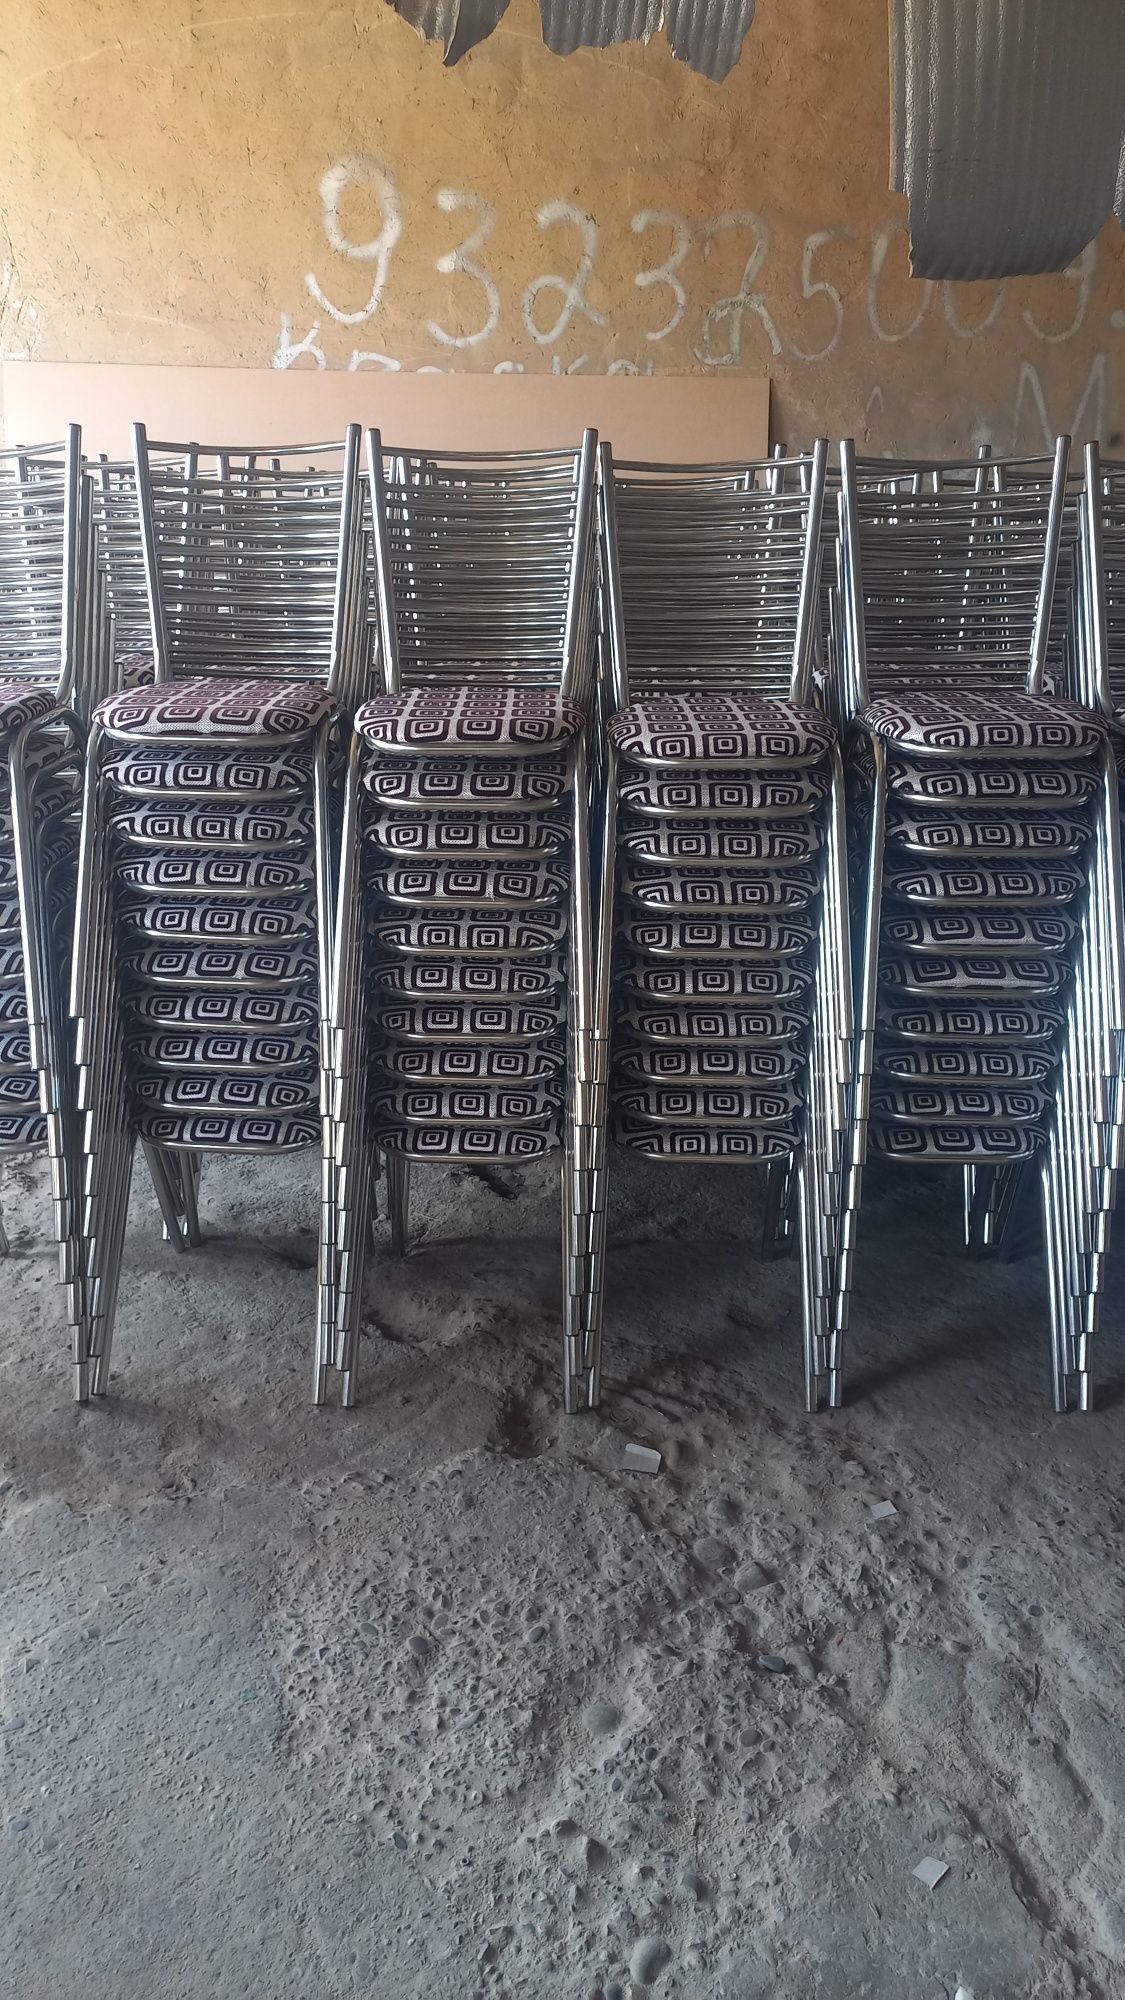 Nerjaveka Prakat stol stular ishlab chiqaramiz kafolati 5 yil